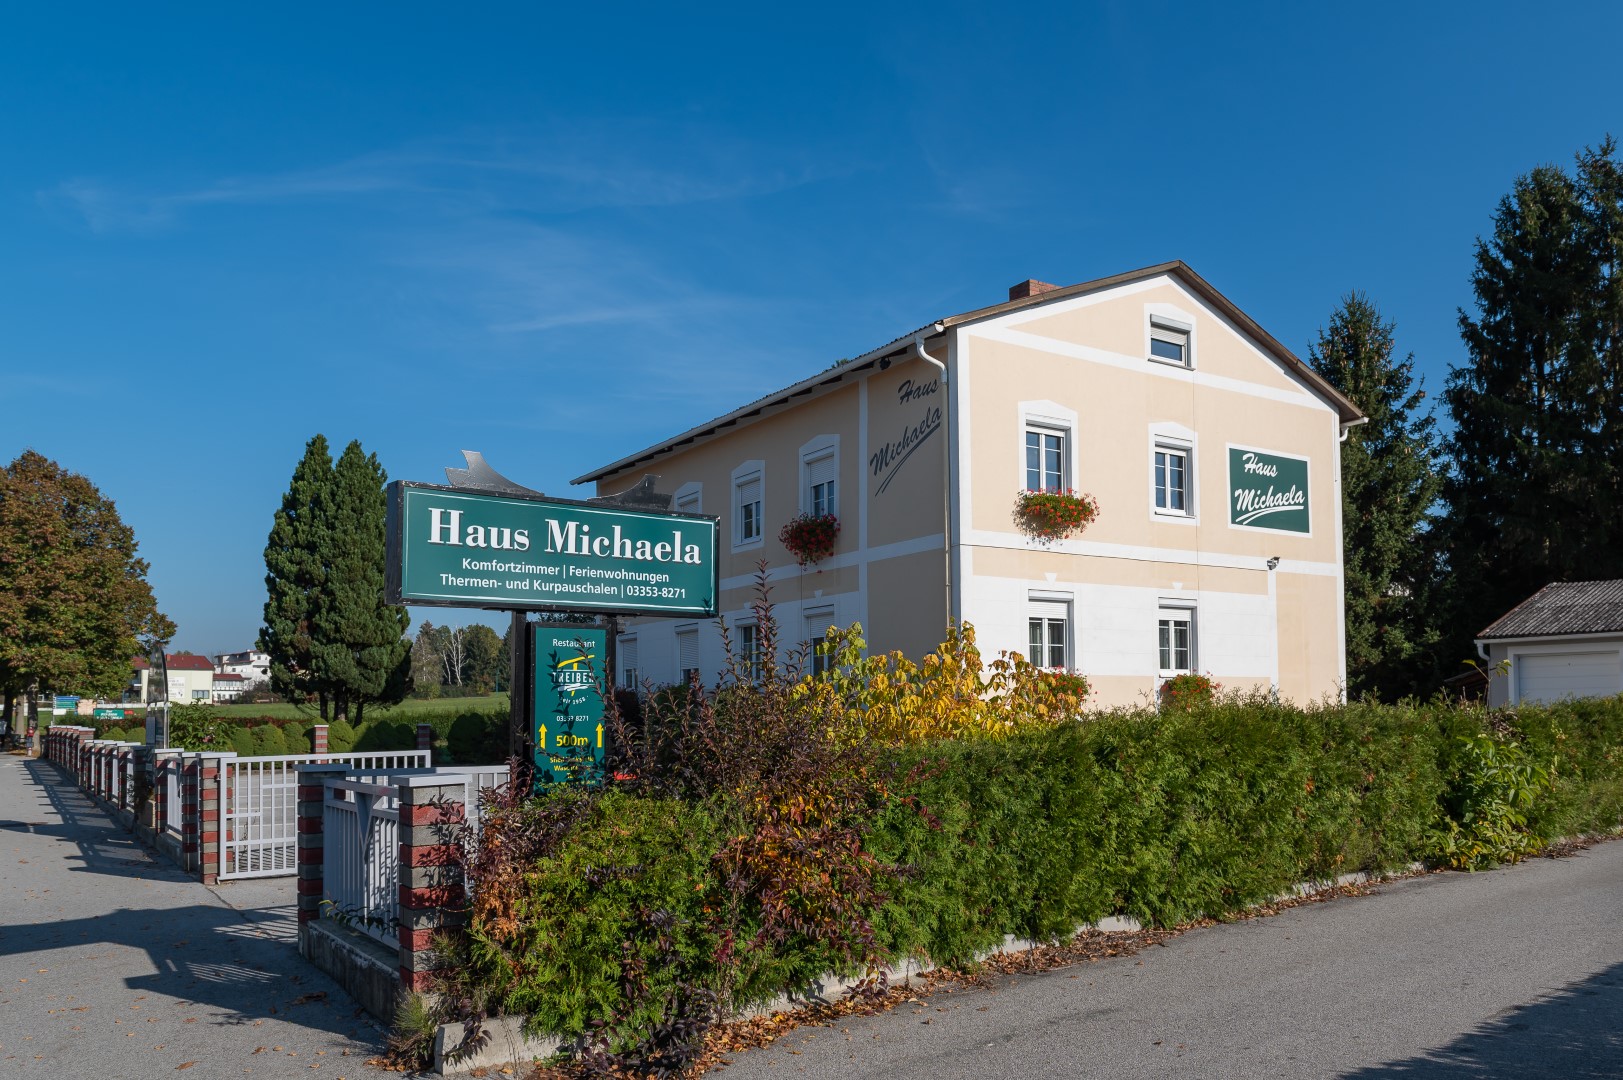 Das "Haus Michaela" in Bad Tatzmannsdorf, ein beige gestrichenes Gebäude mit Schildern für Komfortzimmer und Ferienwohnungen.